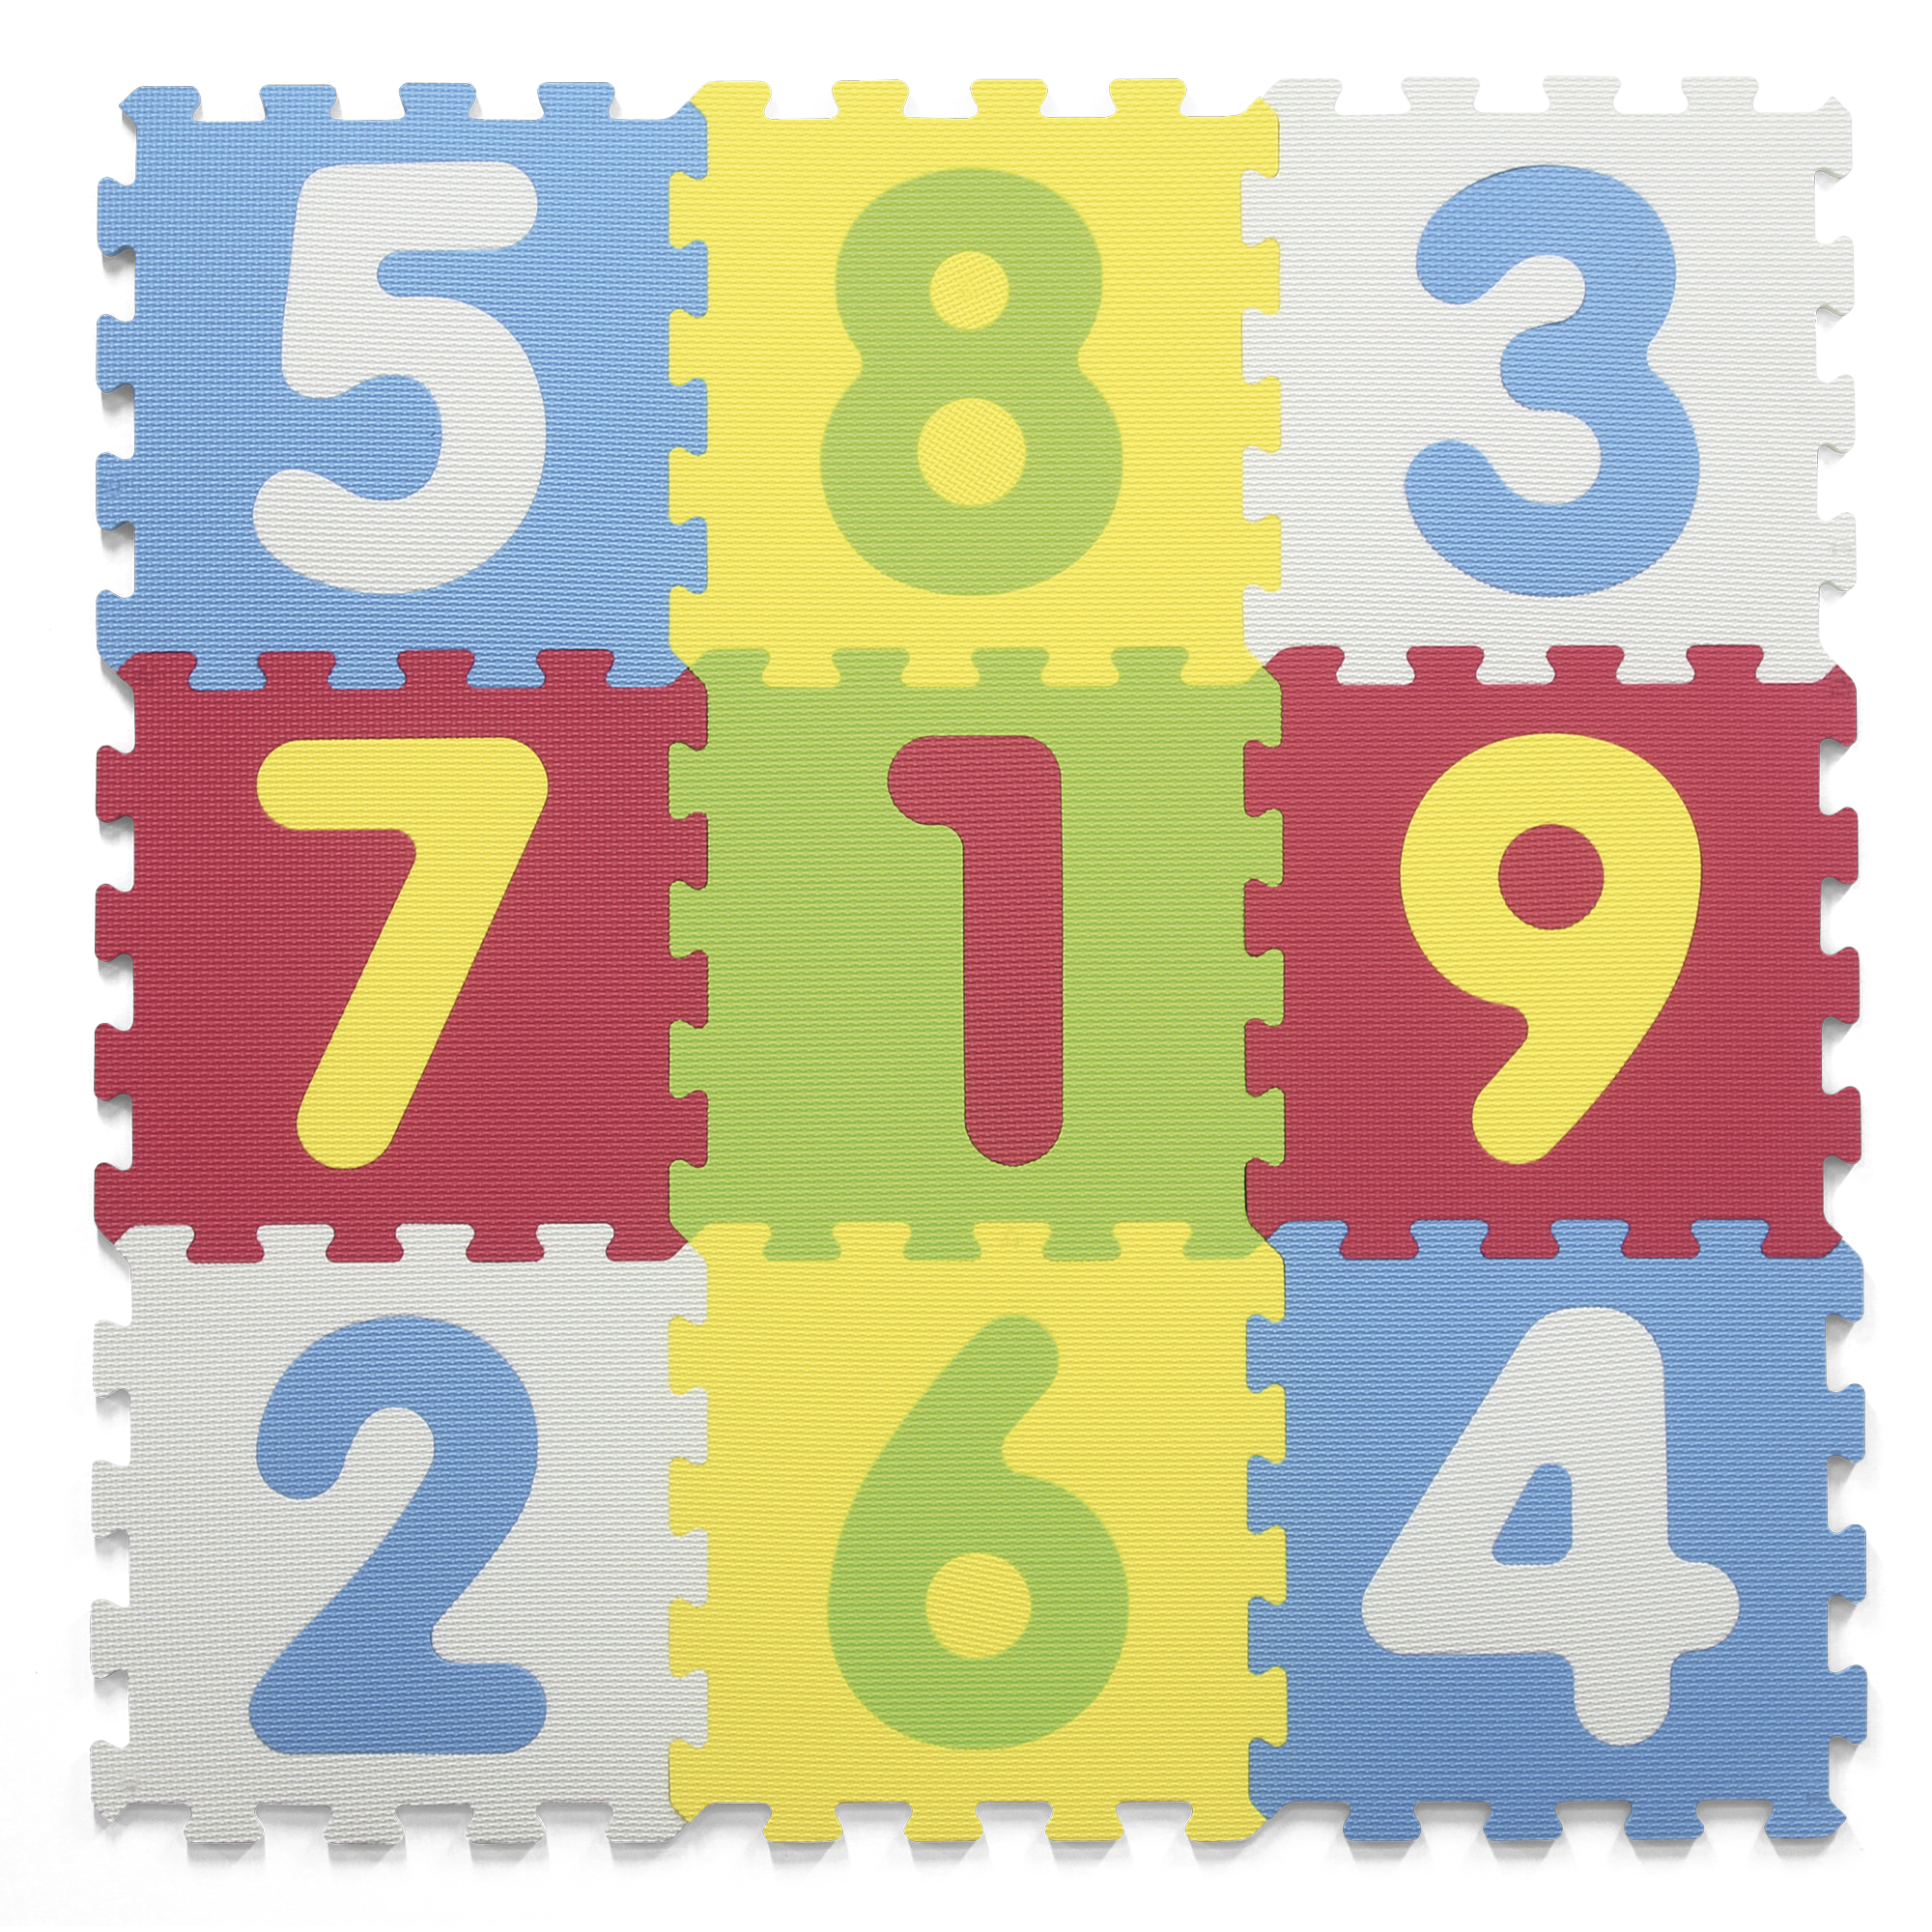 Tappeto Puzzle per Bambini 4 Pezzi 60x60 cm Pinguino Multicolore – acquista  su Giordano Shop